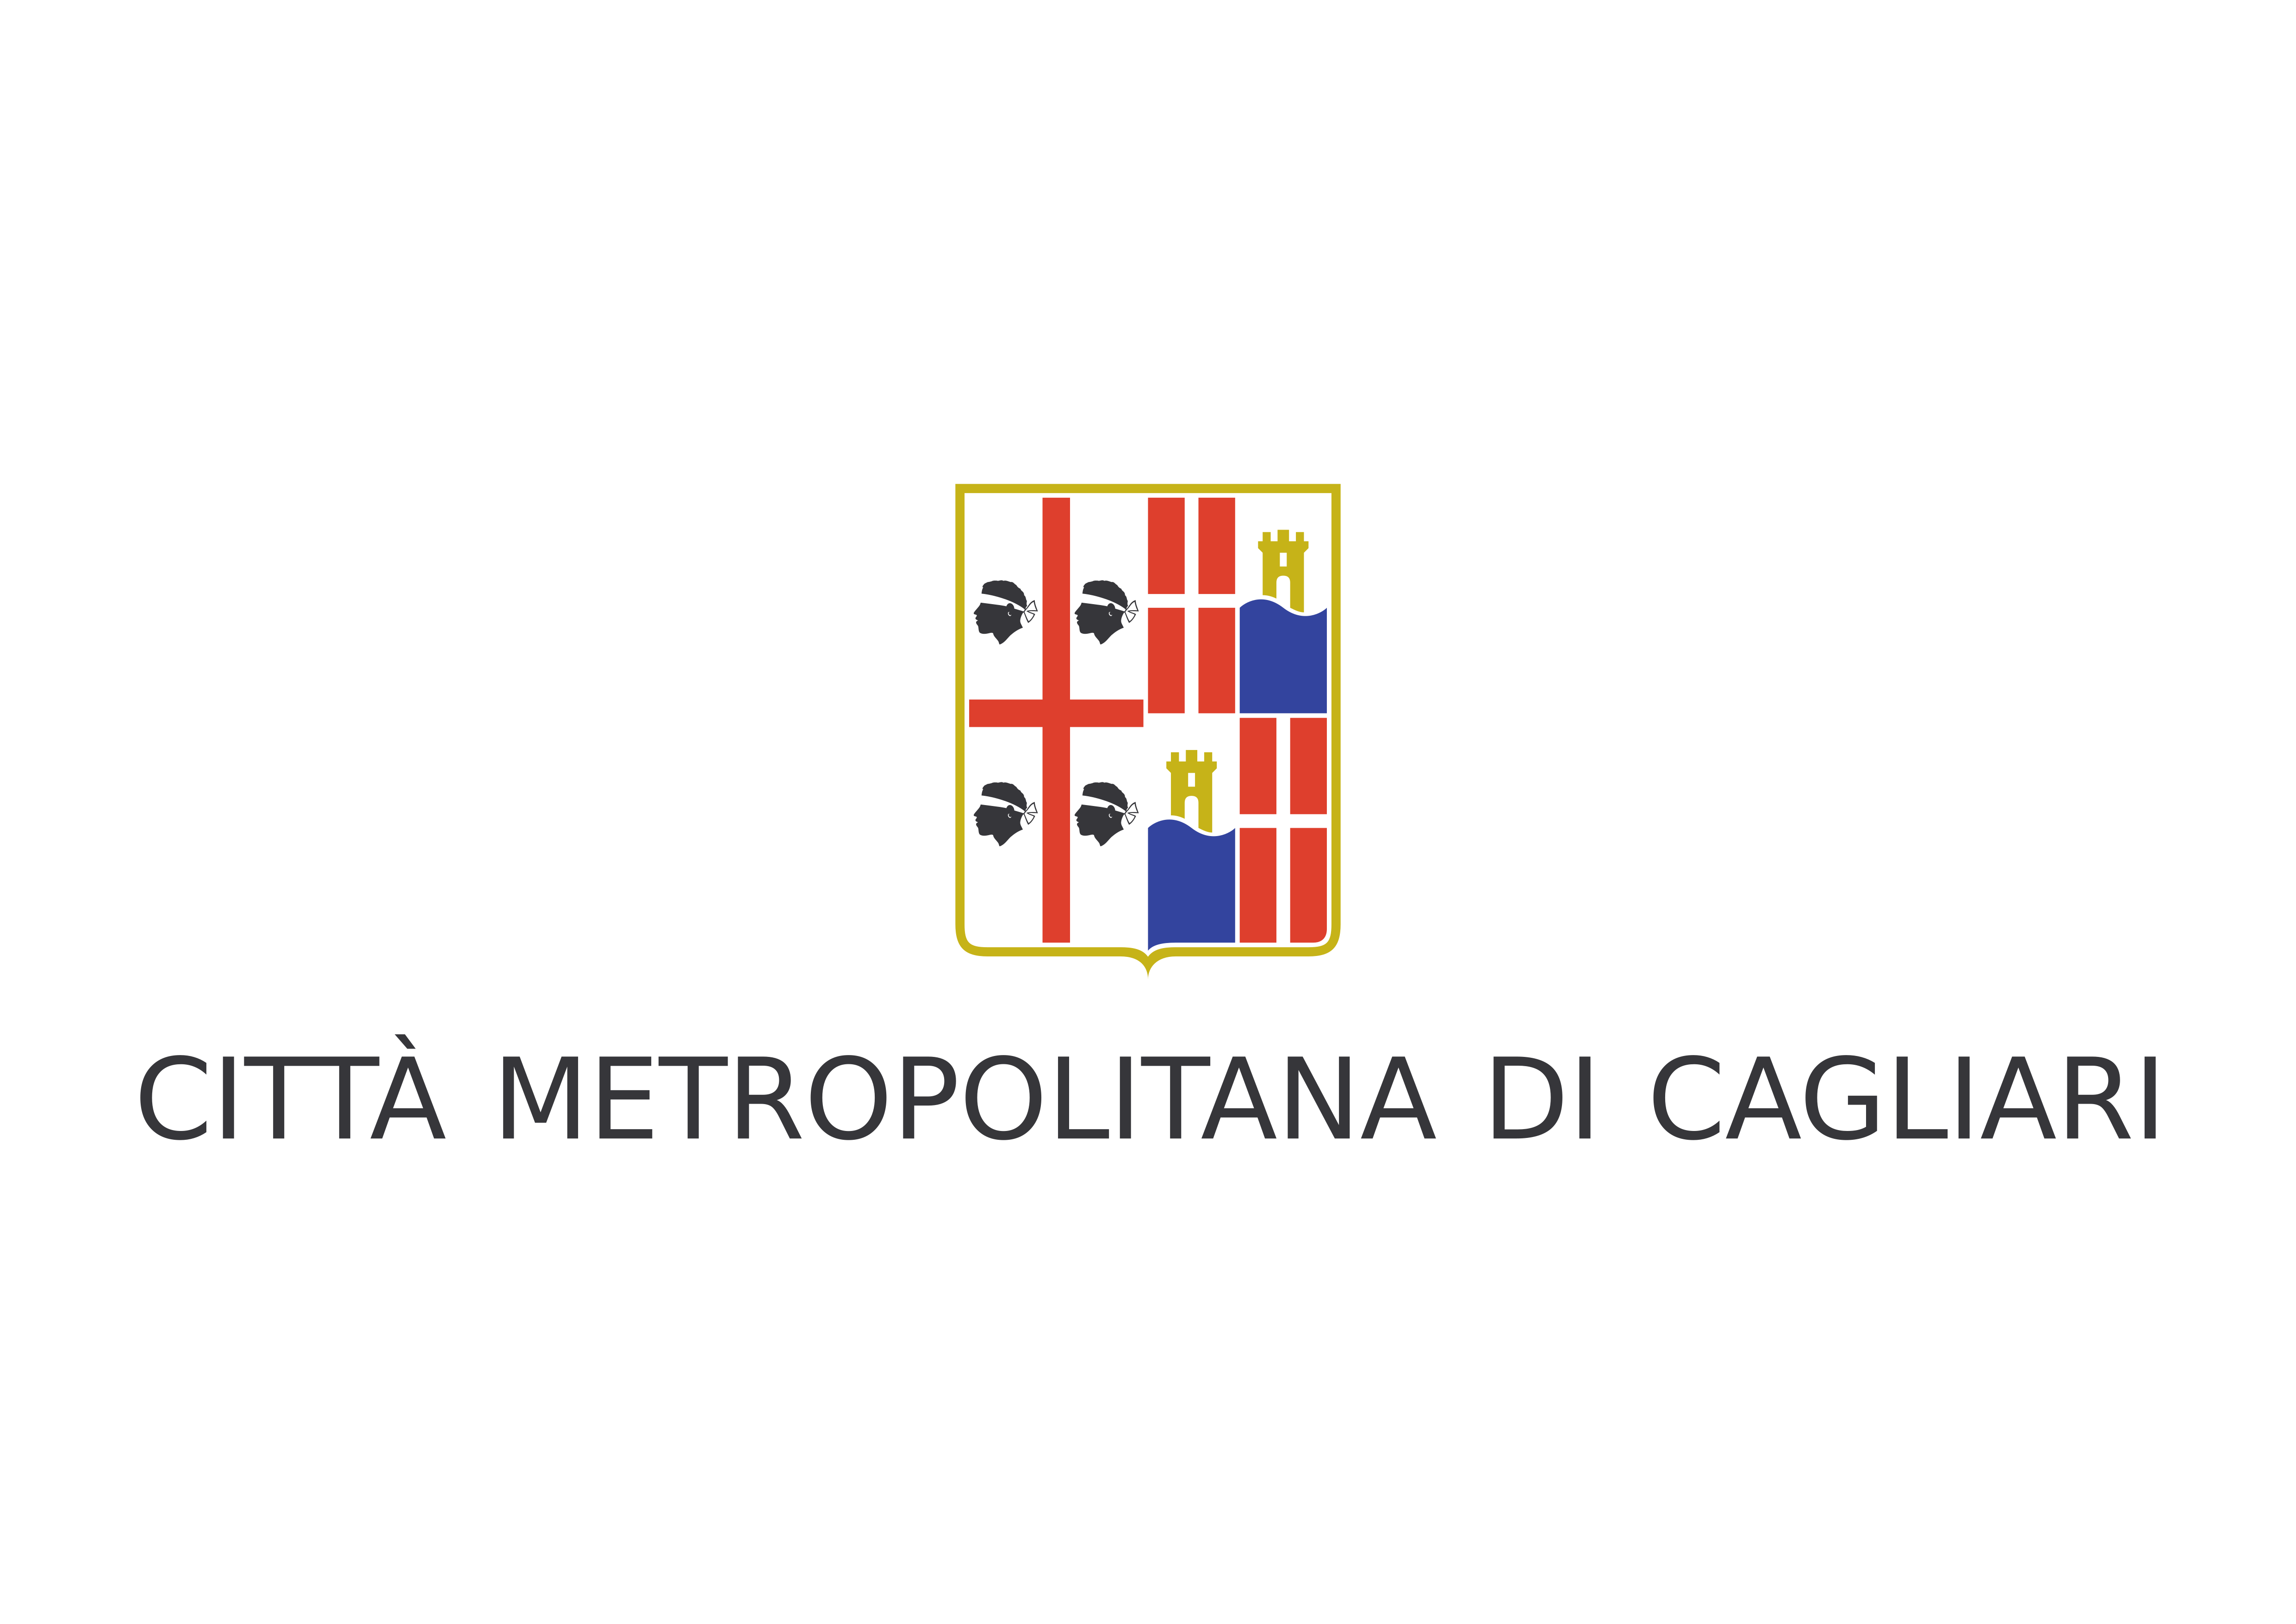 Città metropolitana di Cagliari